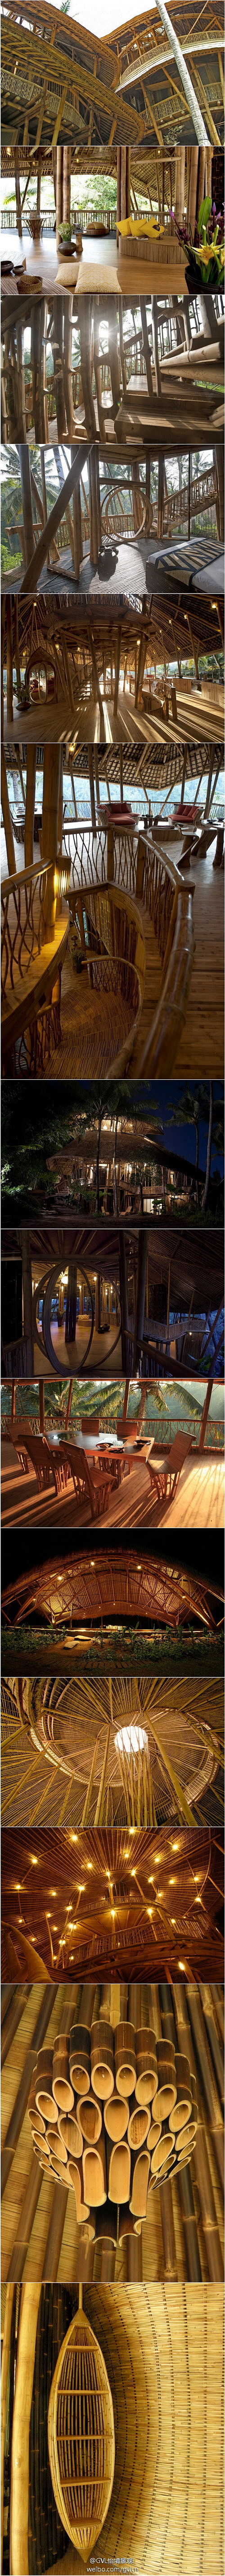 #巴厘岛绿色村庄度假村#设计师与当地工匠...